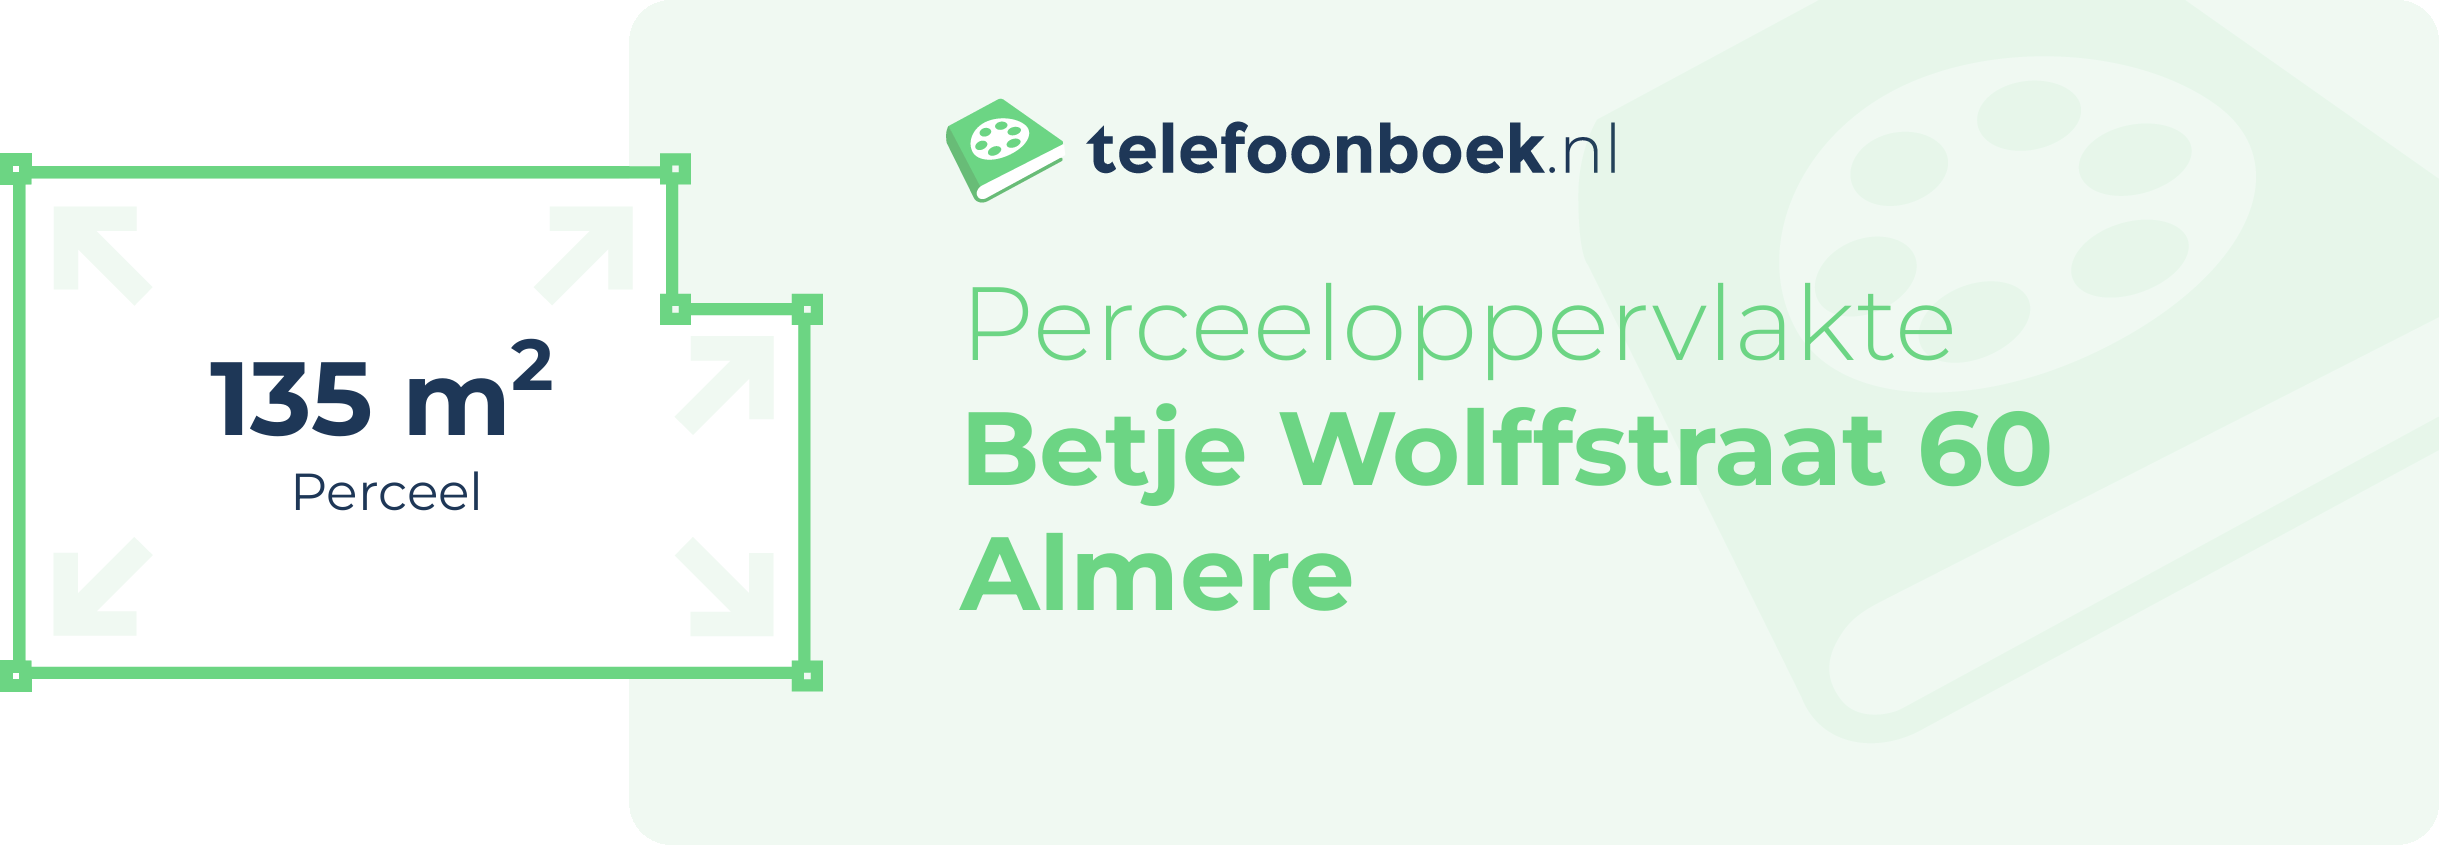 Perceeloppervlakte Betje Wolffstraat 60 Almere